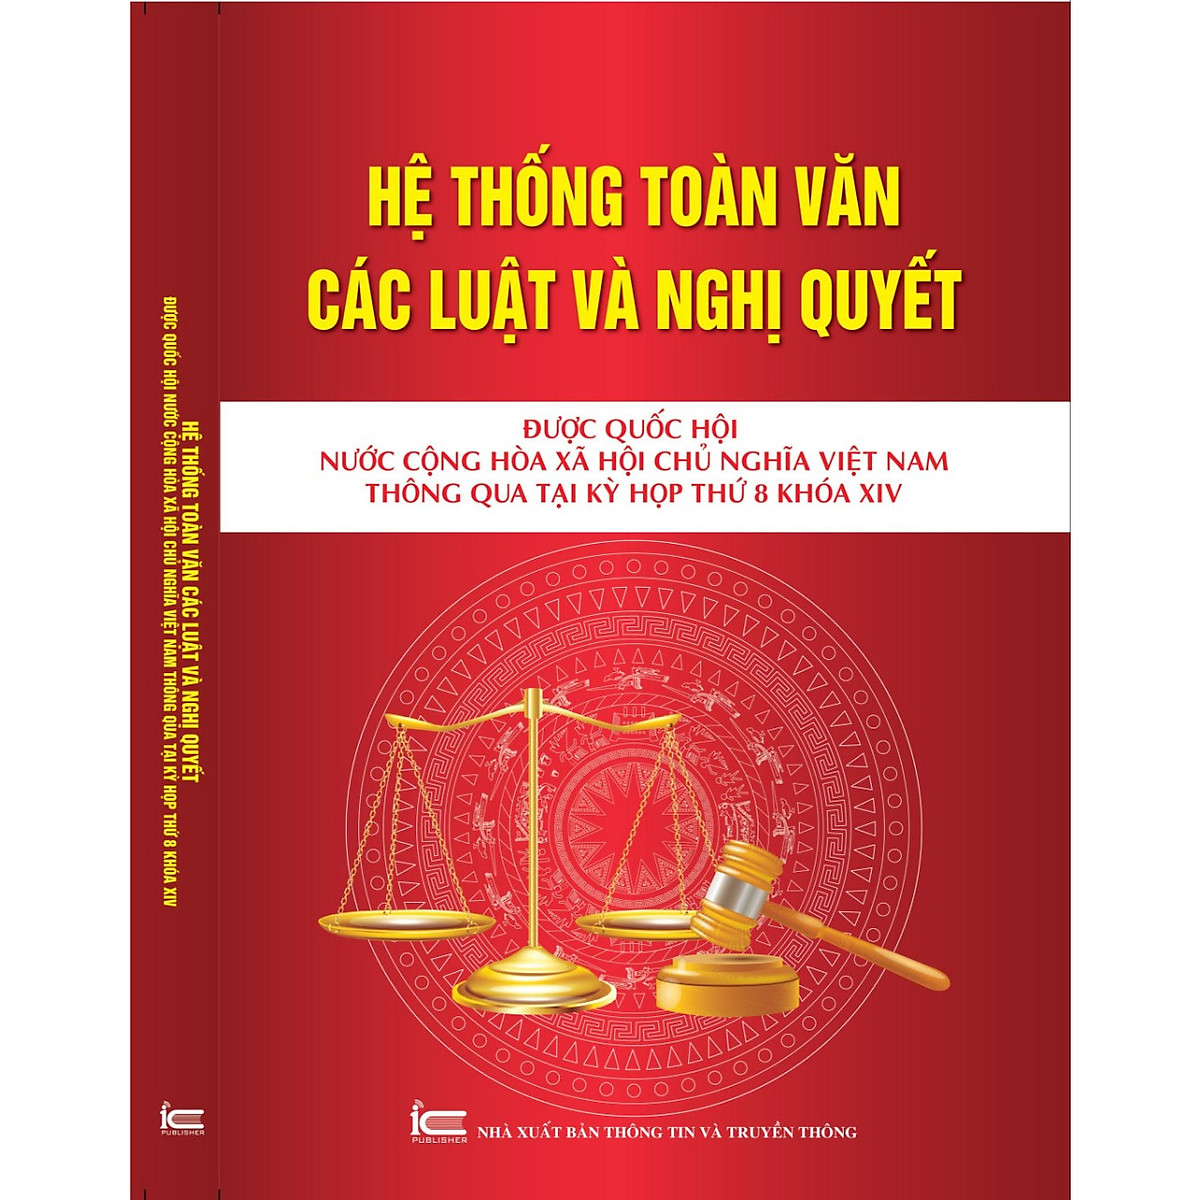 Hệ thống toàn văn các luật và các nghị quyết được quốc hội Nước cộng hòa xã hội chủ nghĩa Việt Nam thông quan tại kỳ họp thứ 8 khóa XIV